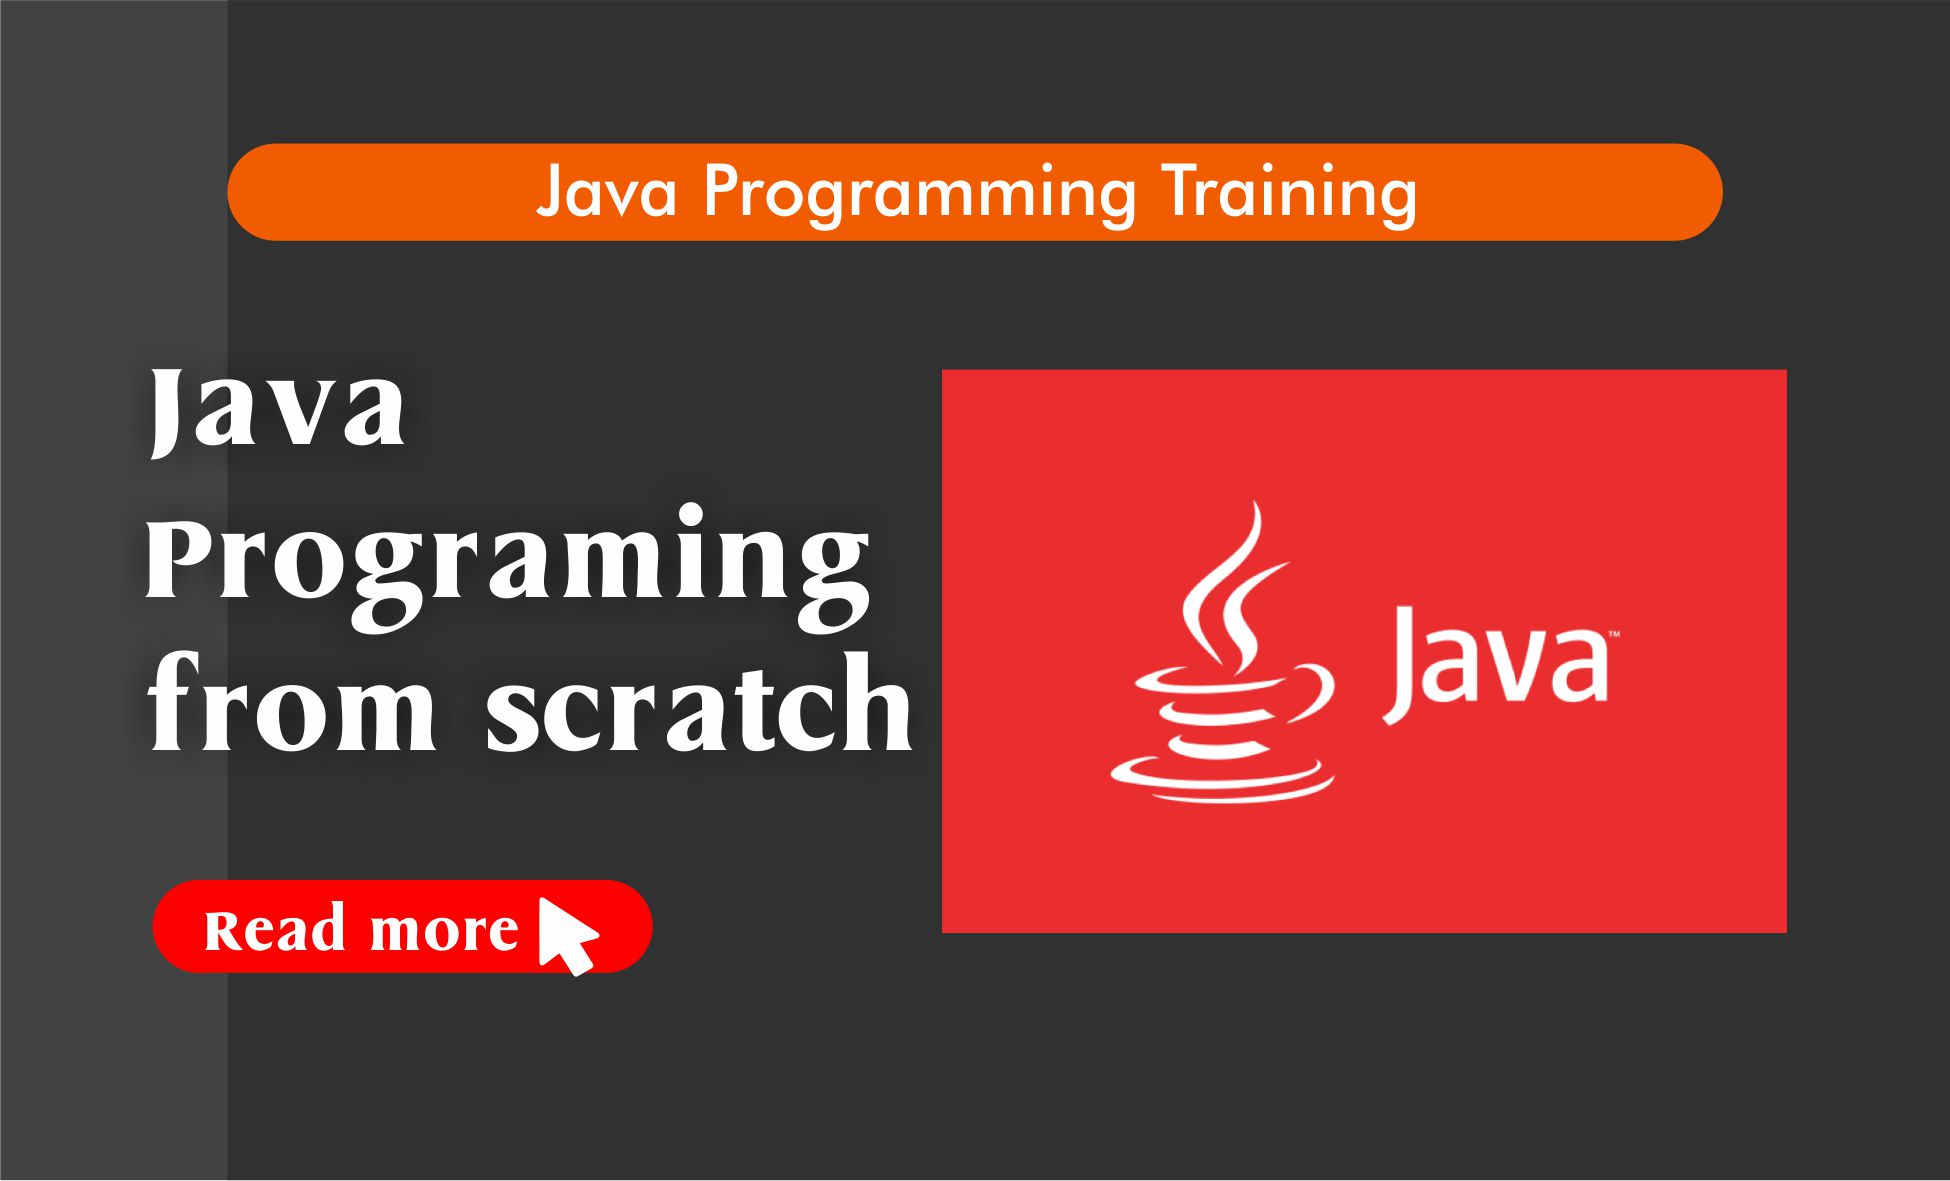 Java Programming Abuja stamsgroup.com